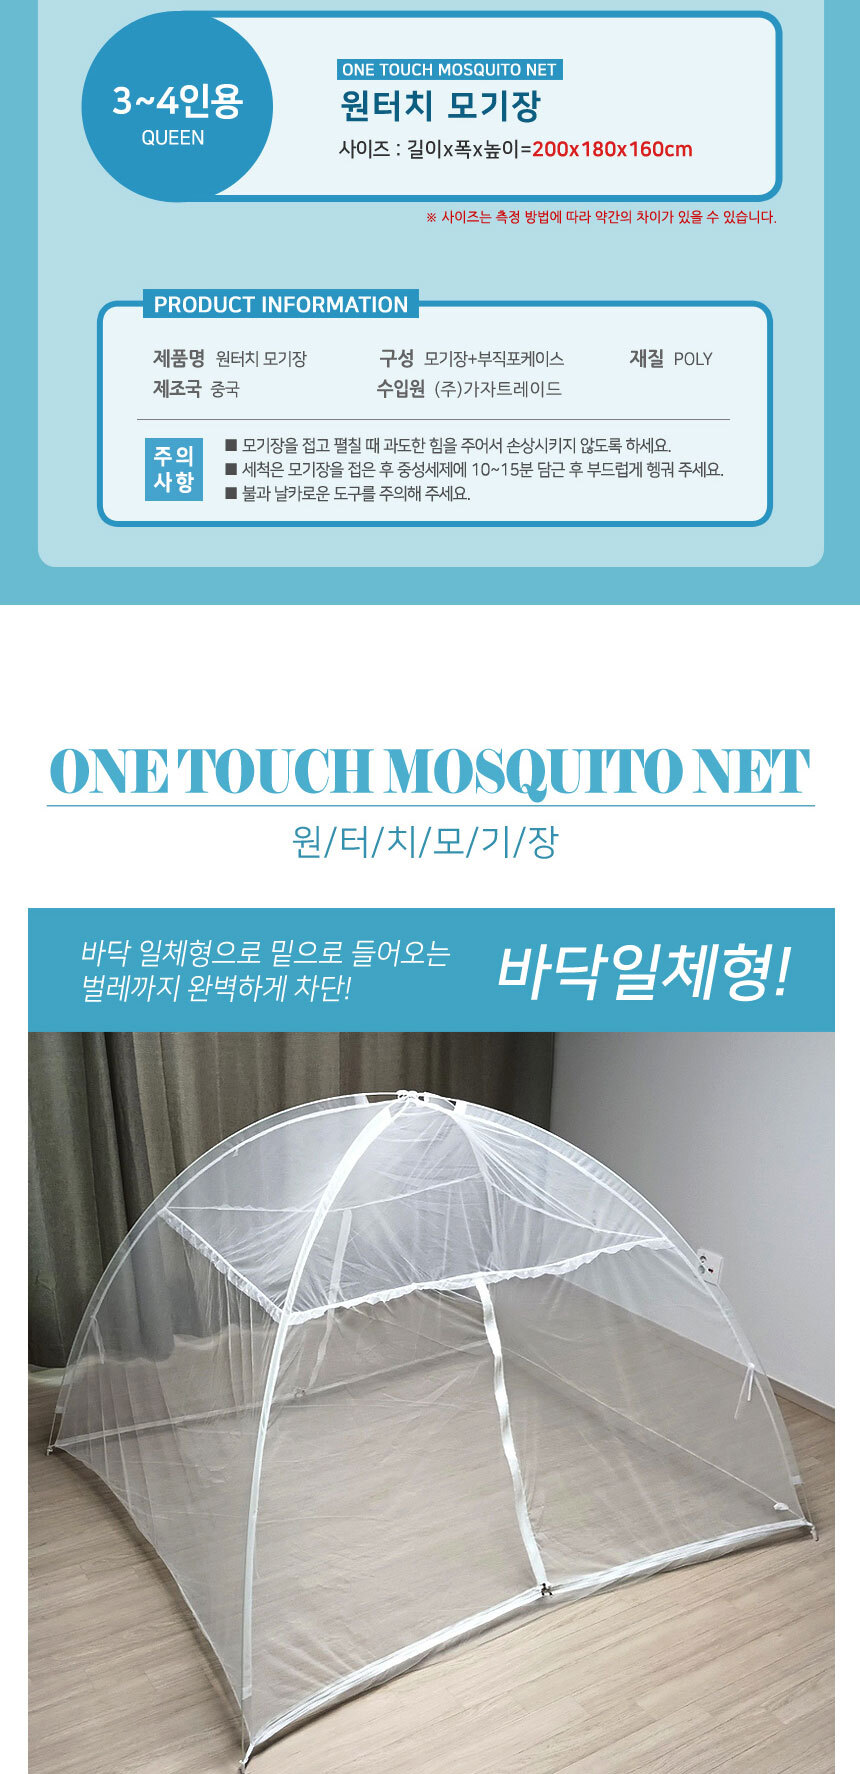 mosquitonet_02.jpg